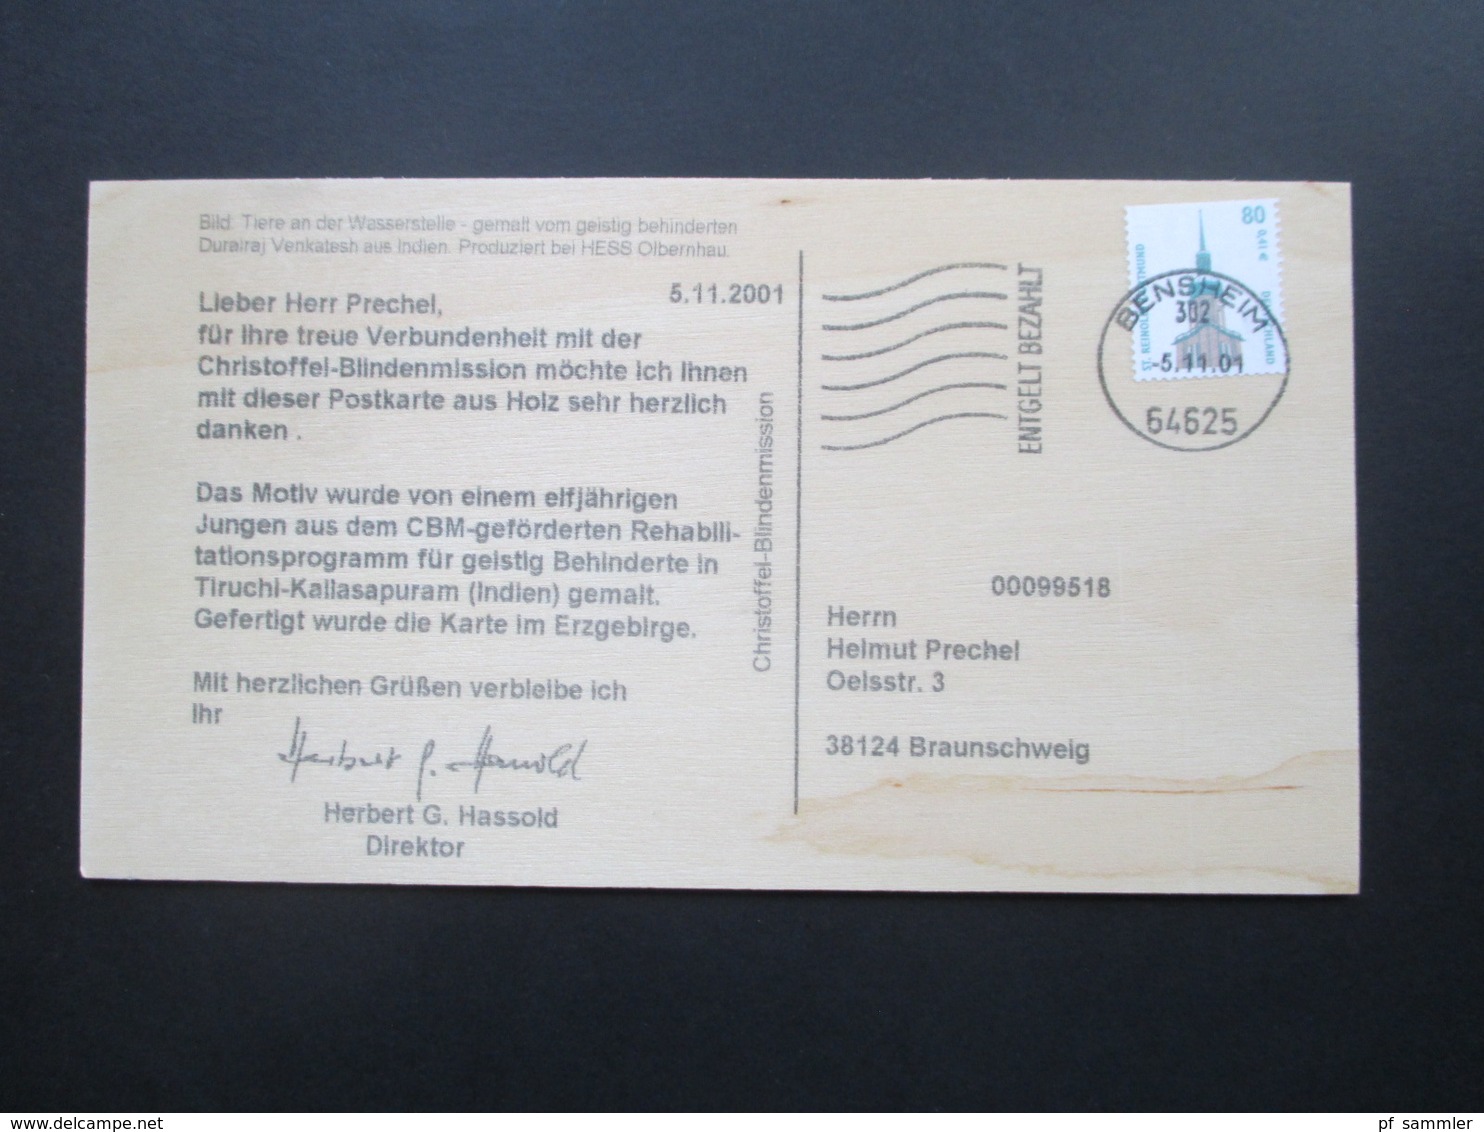 BRD 1999 - 2001 Holzpostkarten der Christoffel Blindenmission Entgelt bezahlt Bensheim